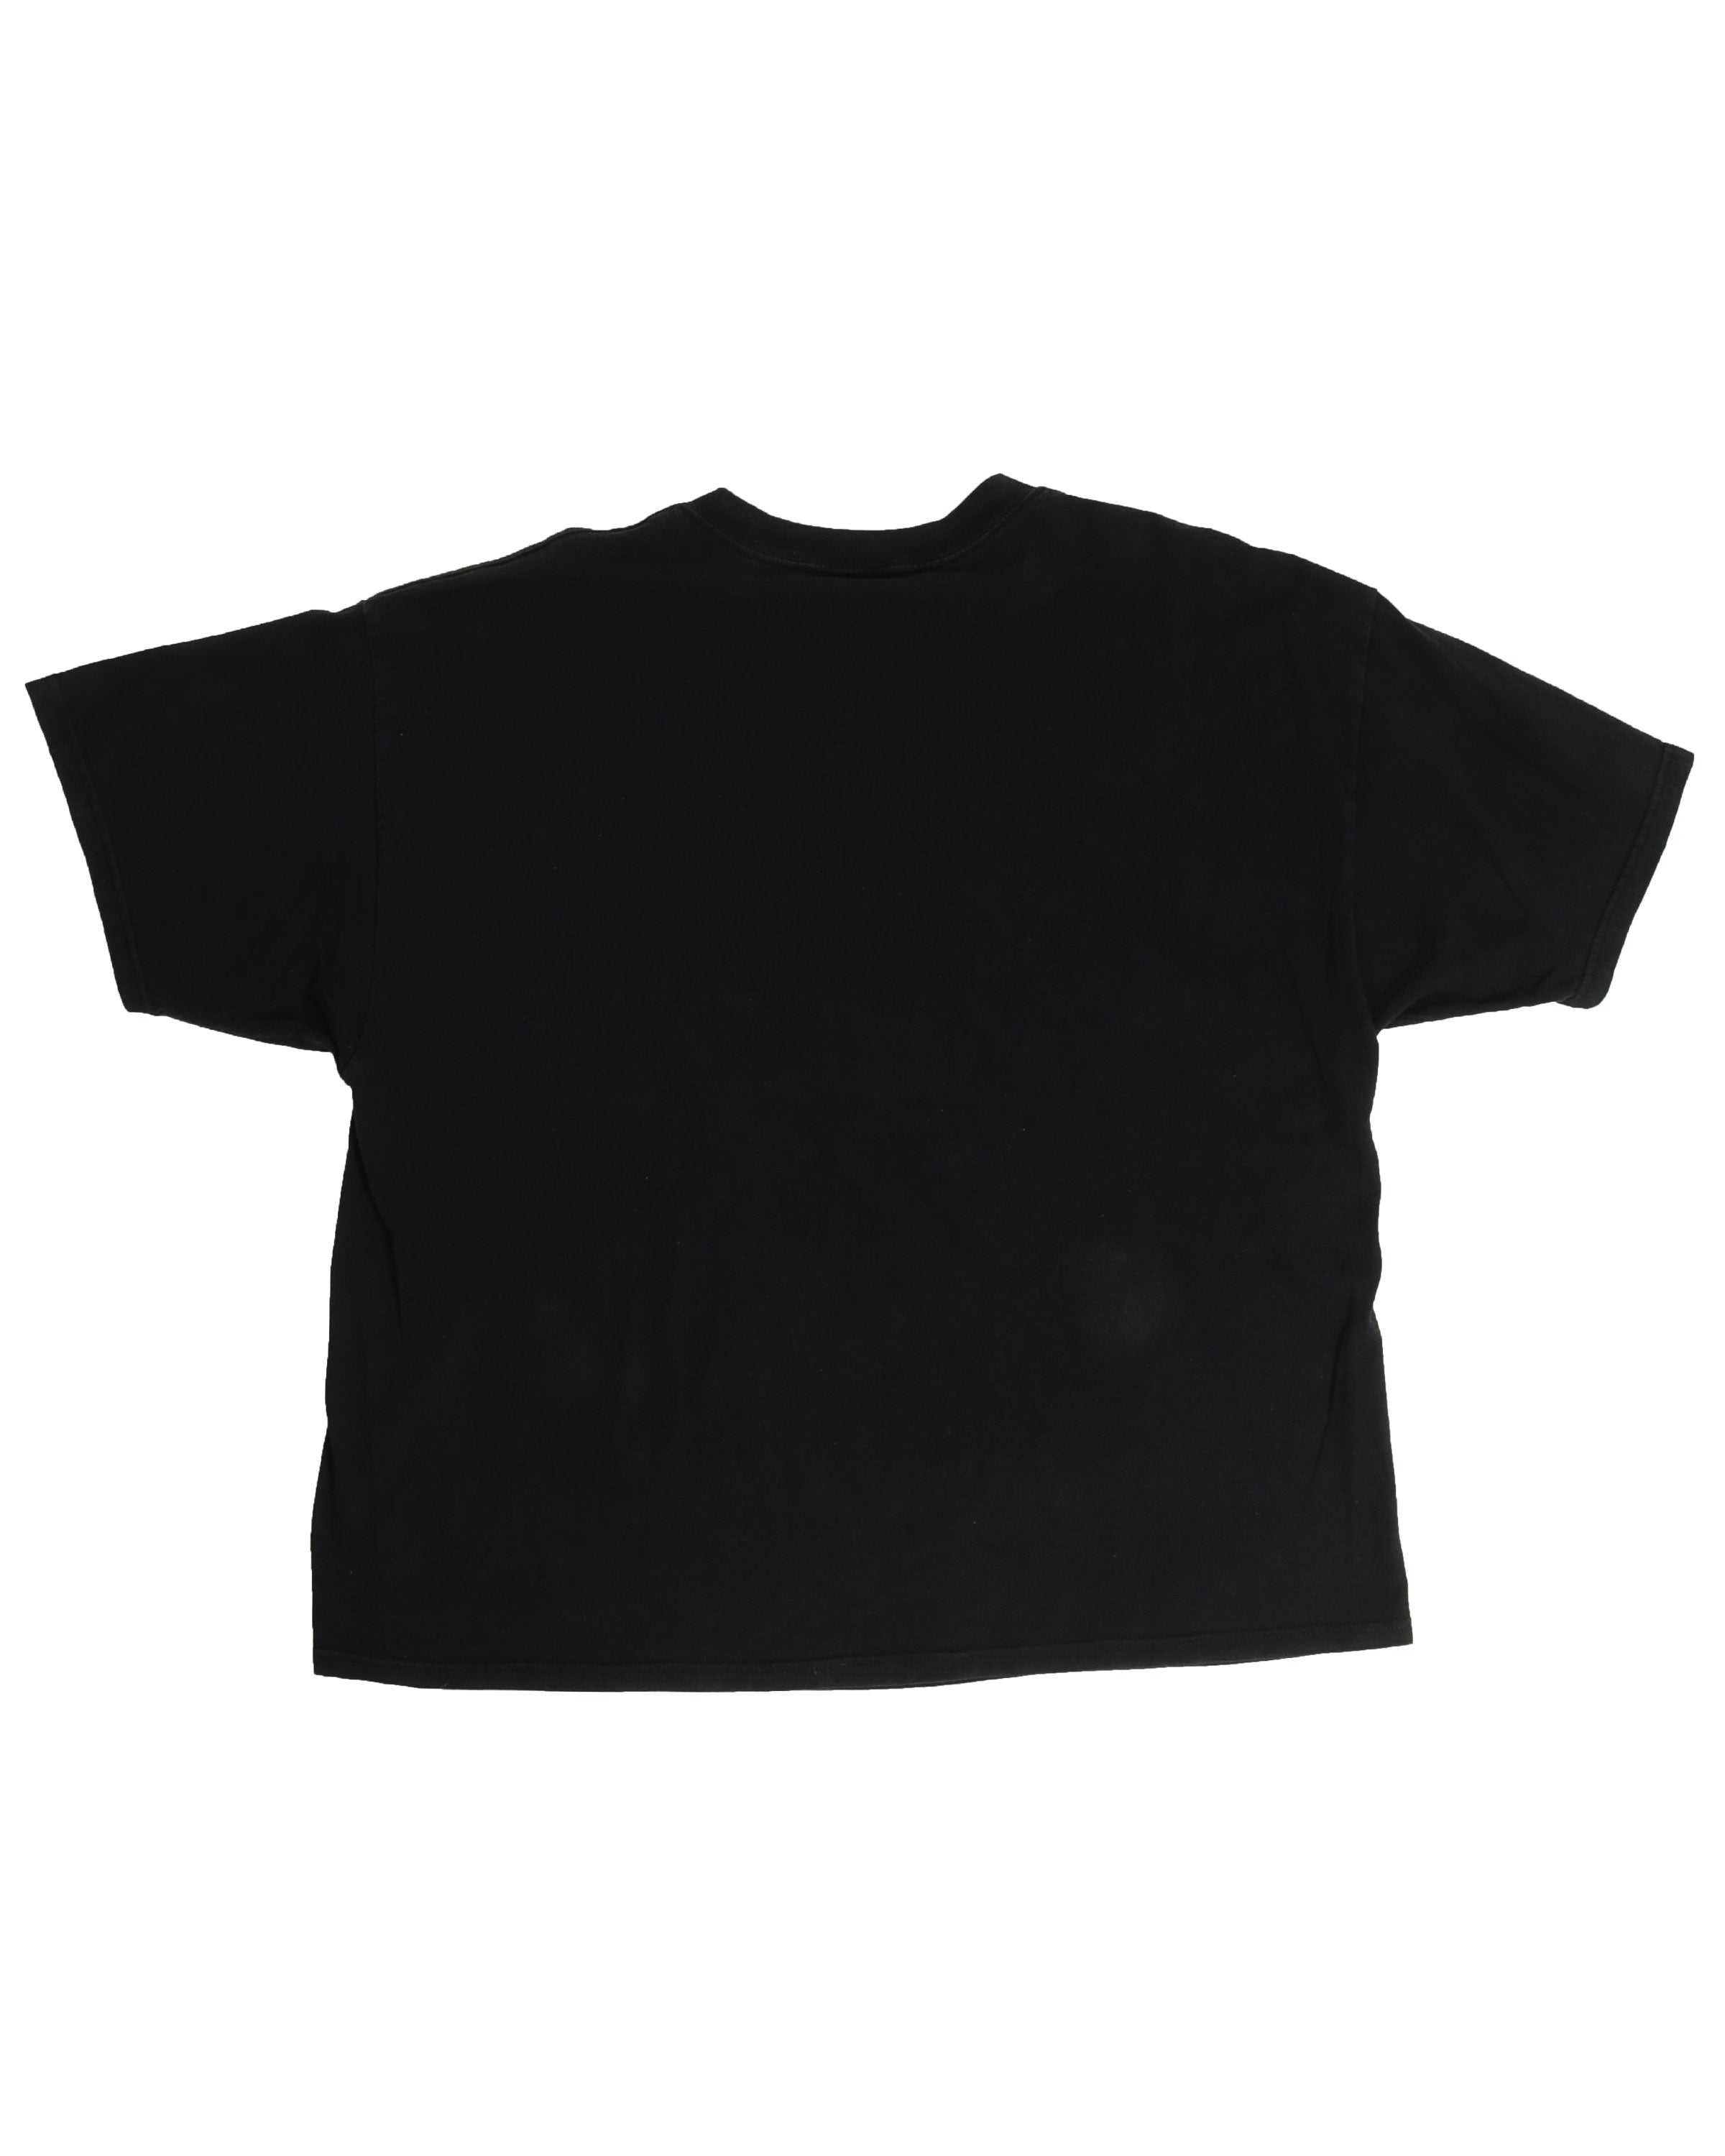 Donnie Darko Movie Promo T-Shirt